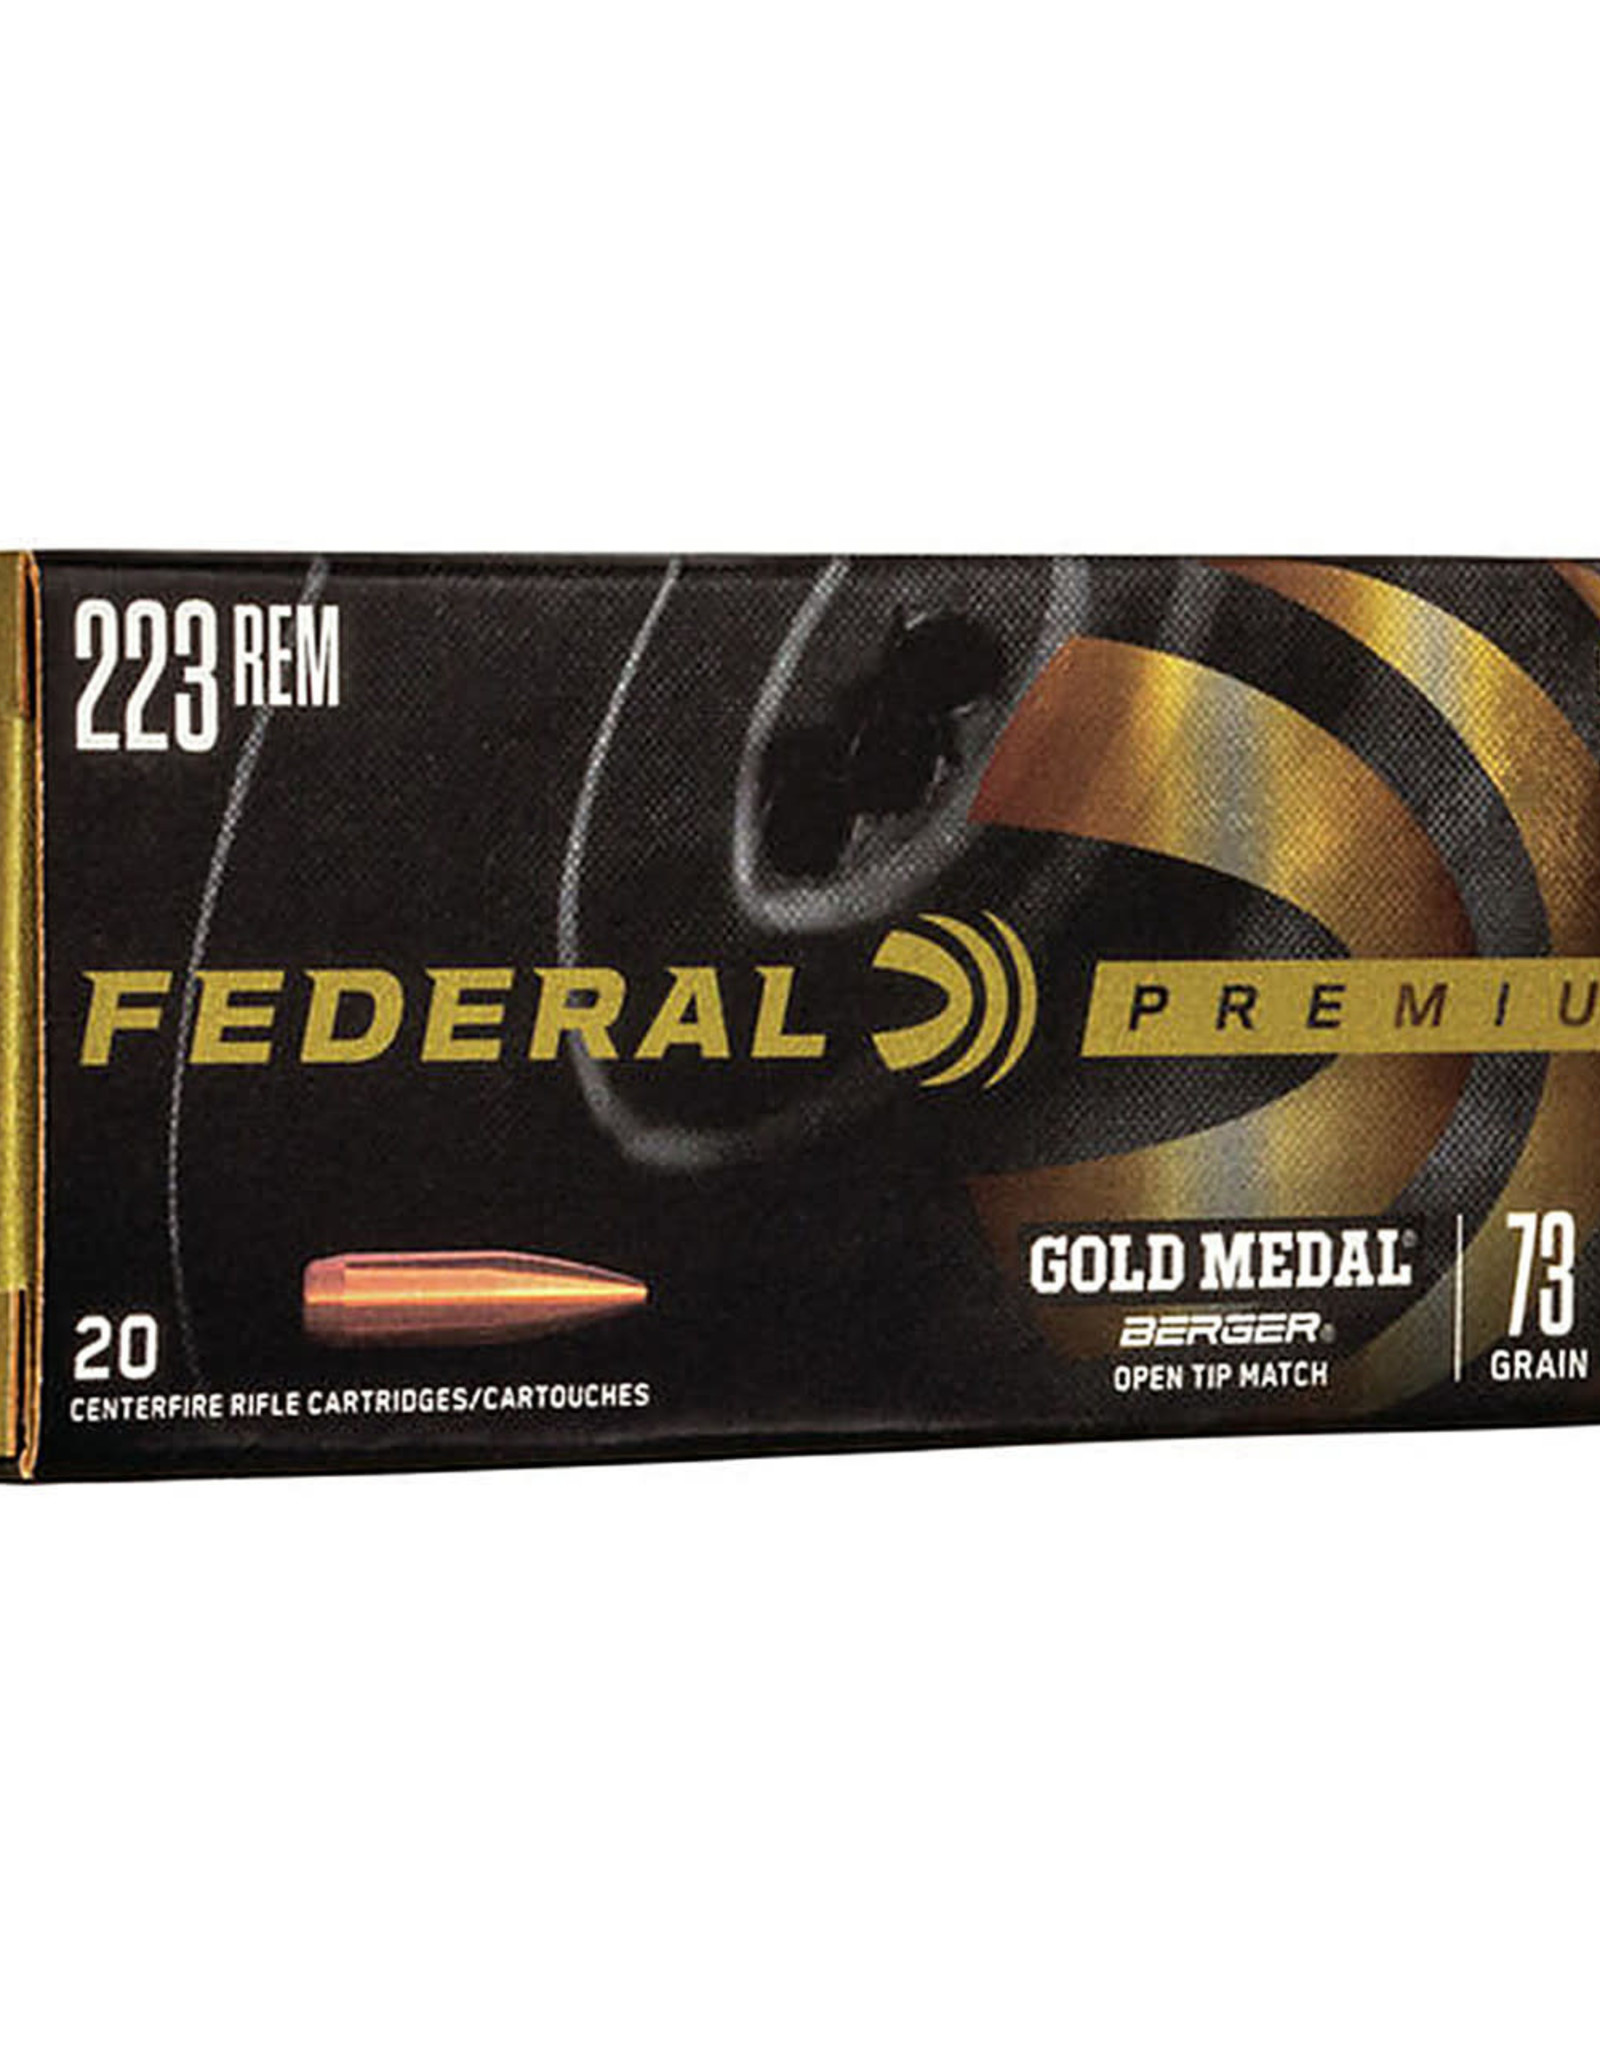 Federal Premium Gold Medal Berger